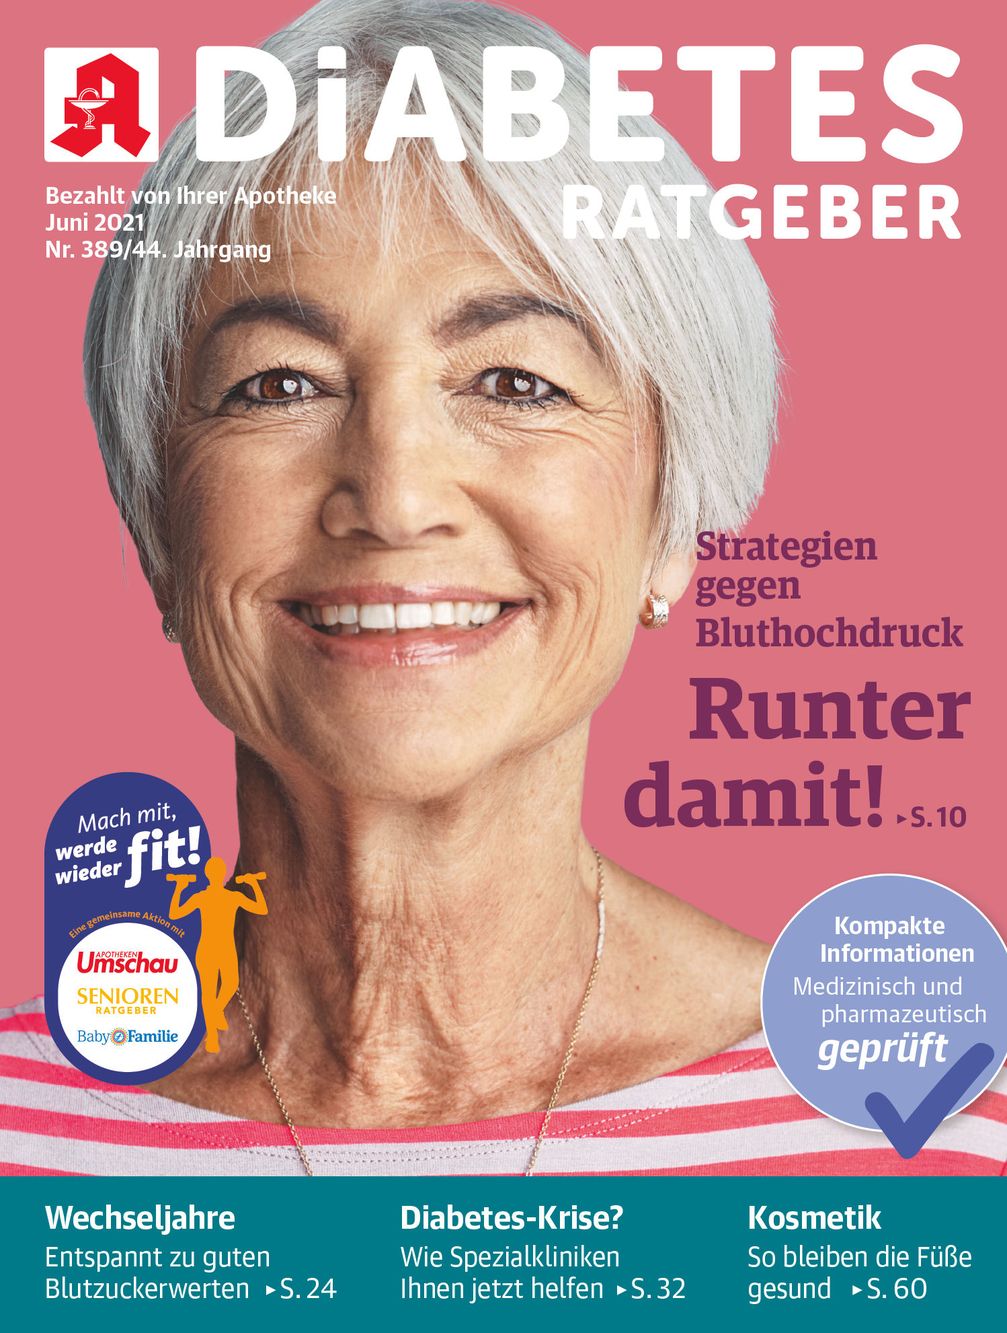 Titelbild Diabets Ratgeber Juni 2021 Bild: Wort & Bild Verlag Fotograf: Wort & Bild Verlag